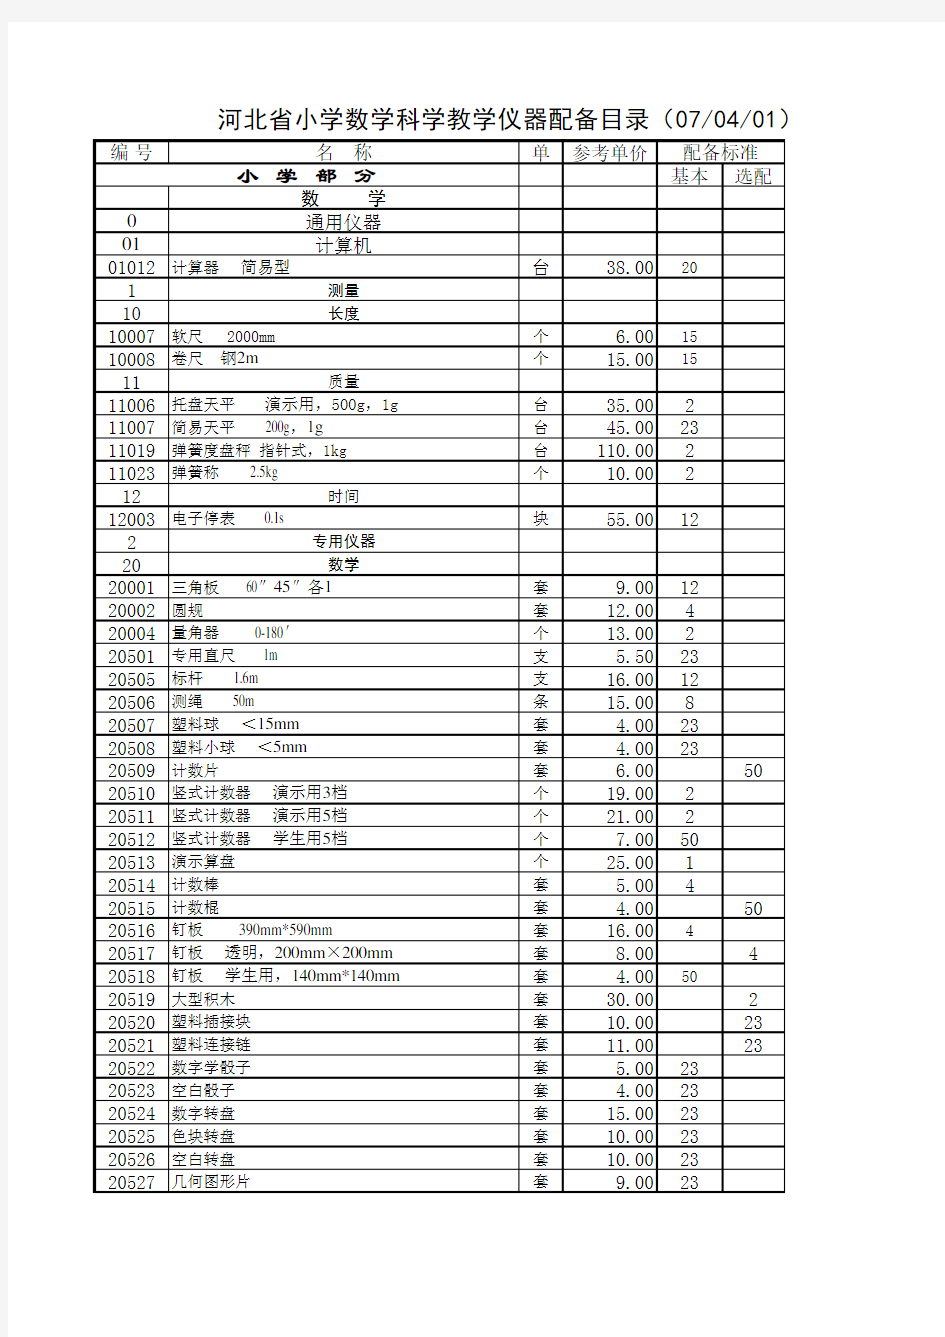 河北省小学数学科学教学仪器配备目录(070401)